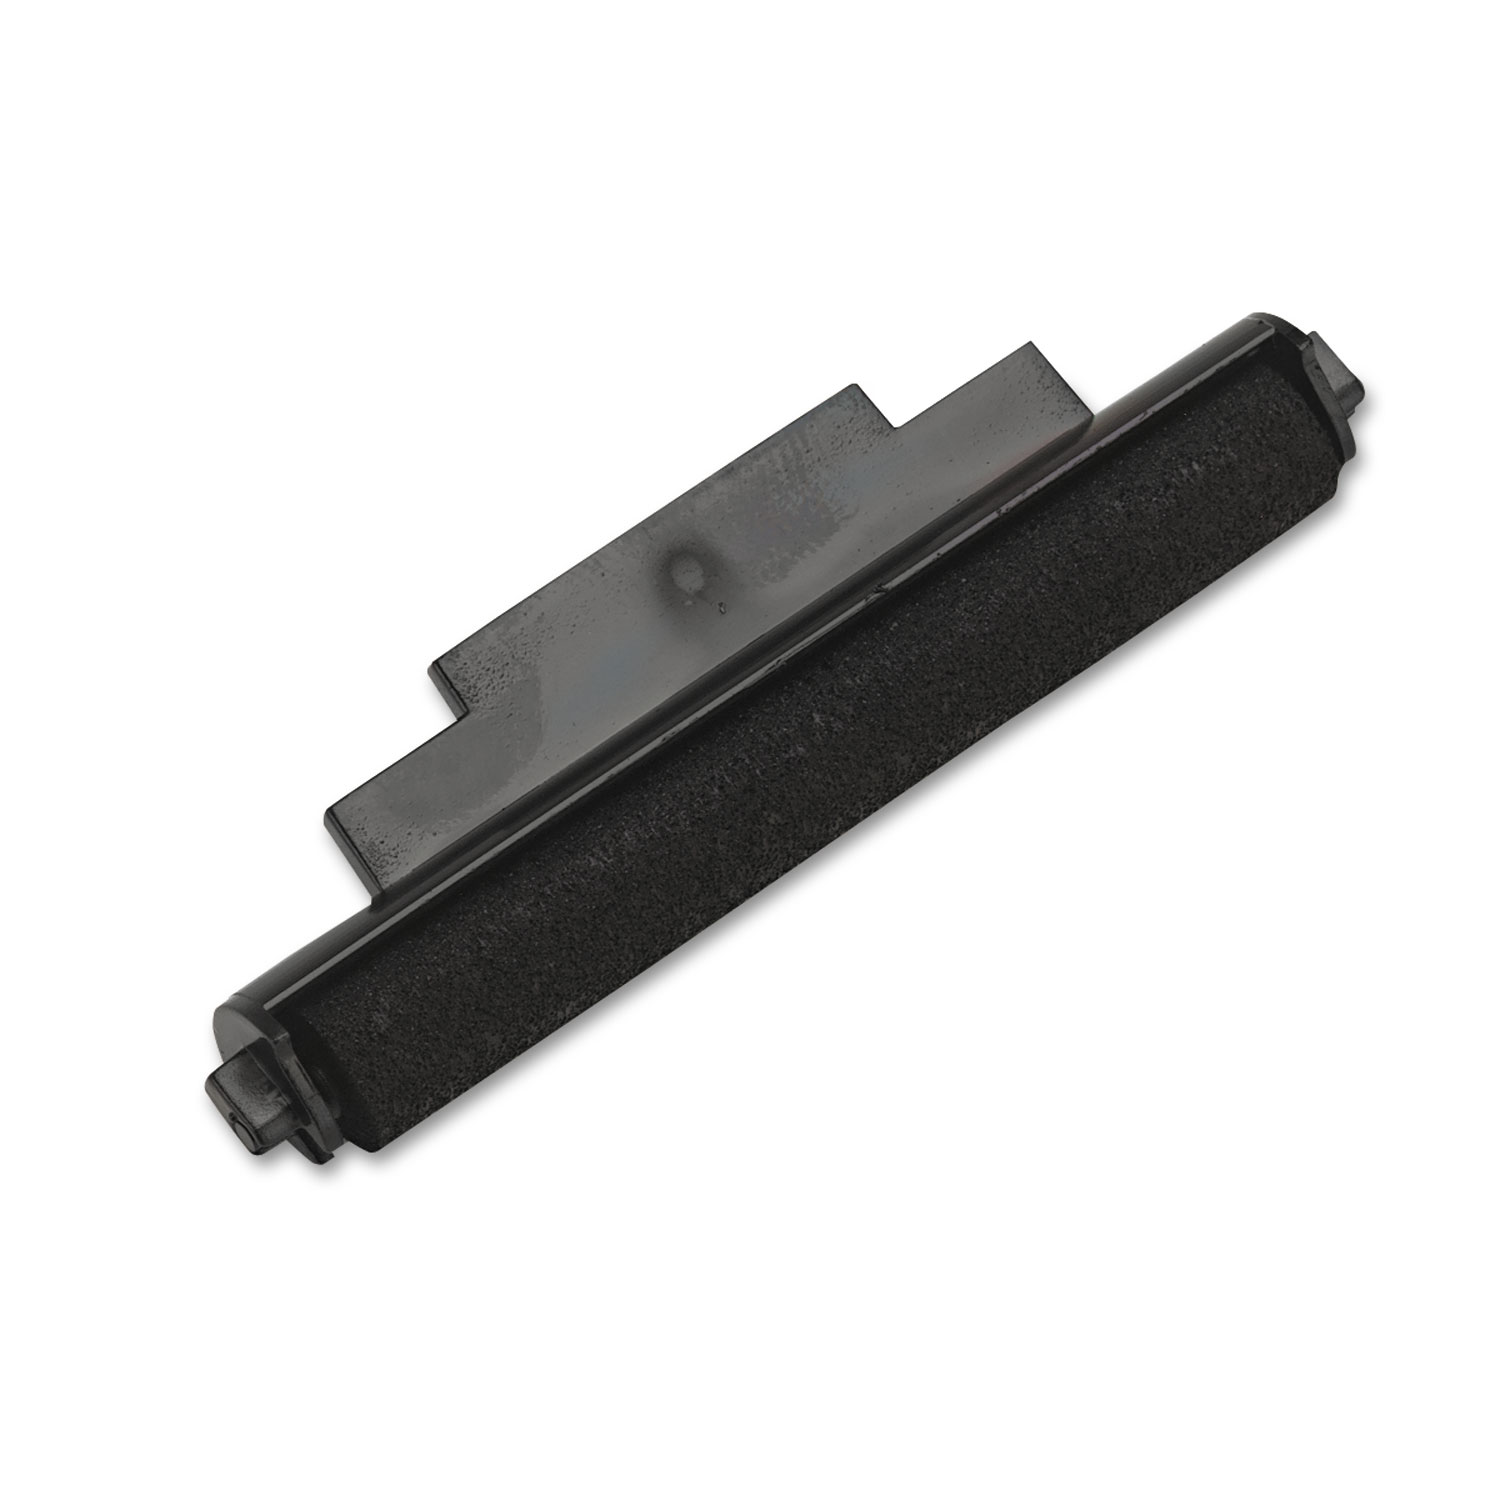 R1150 Compatible Ink Roller, Black